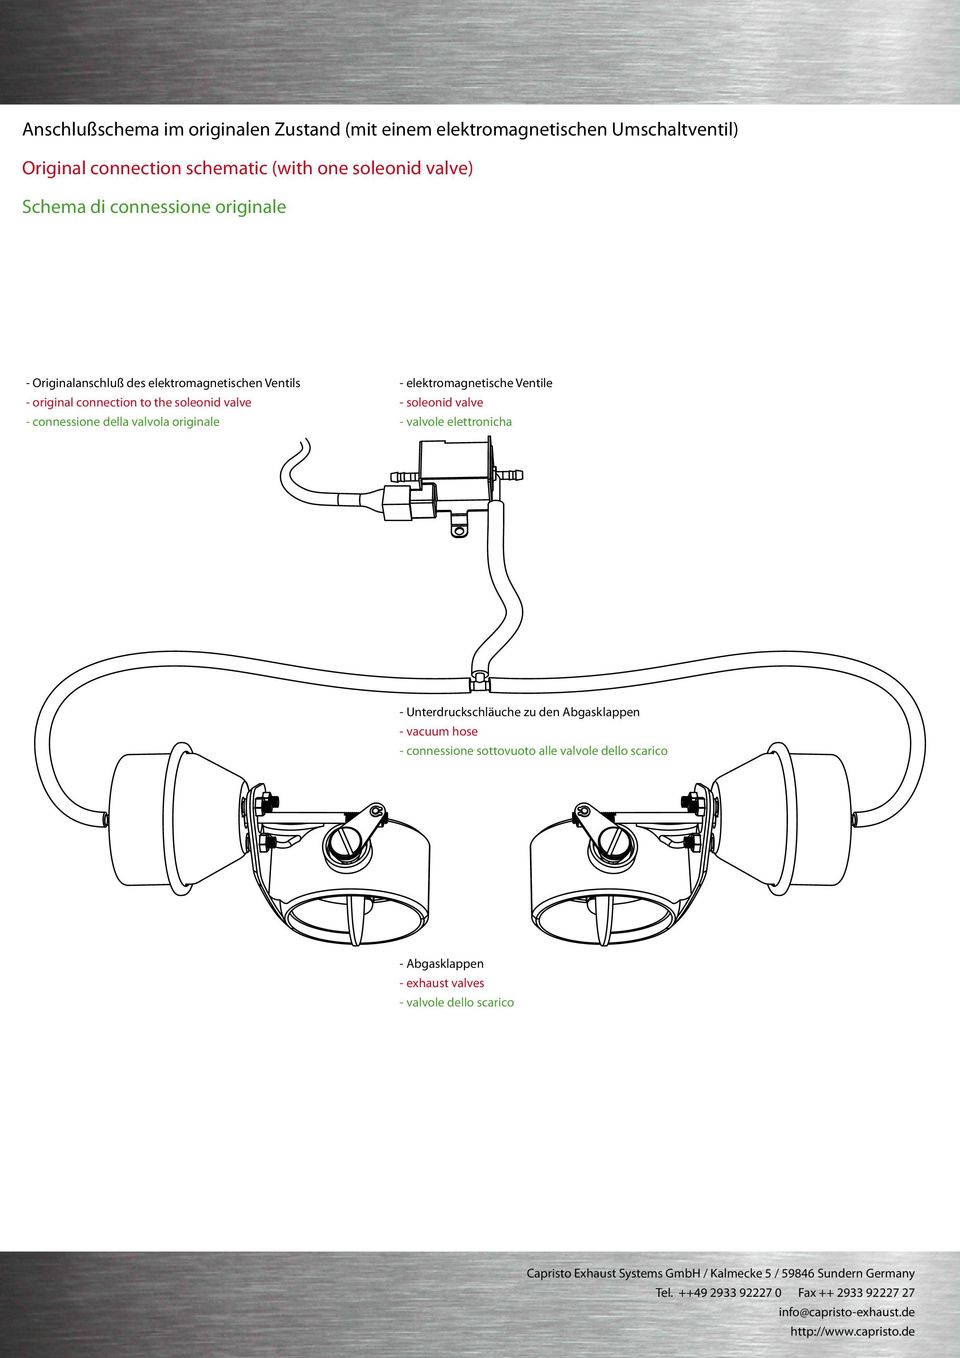 valve - valvole elettronicha - Unterdruckschläuche zu den Abgasklappen - vacuum hose - connessione sottovuoto alle valvole dello scarico - Abgasklappen - exhaust valves -